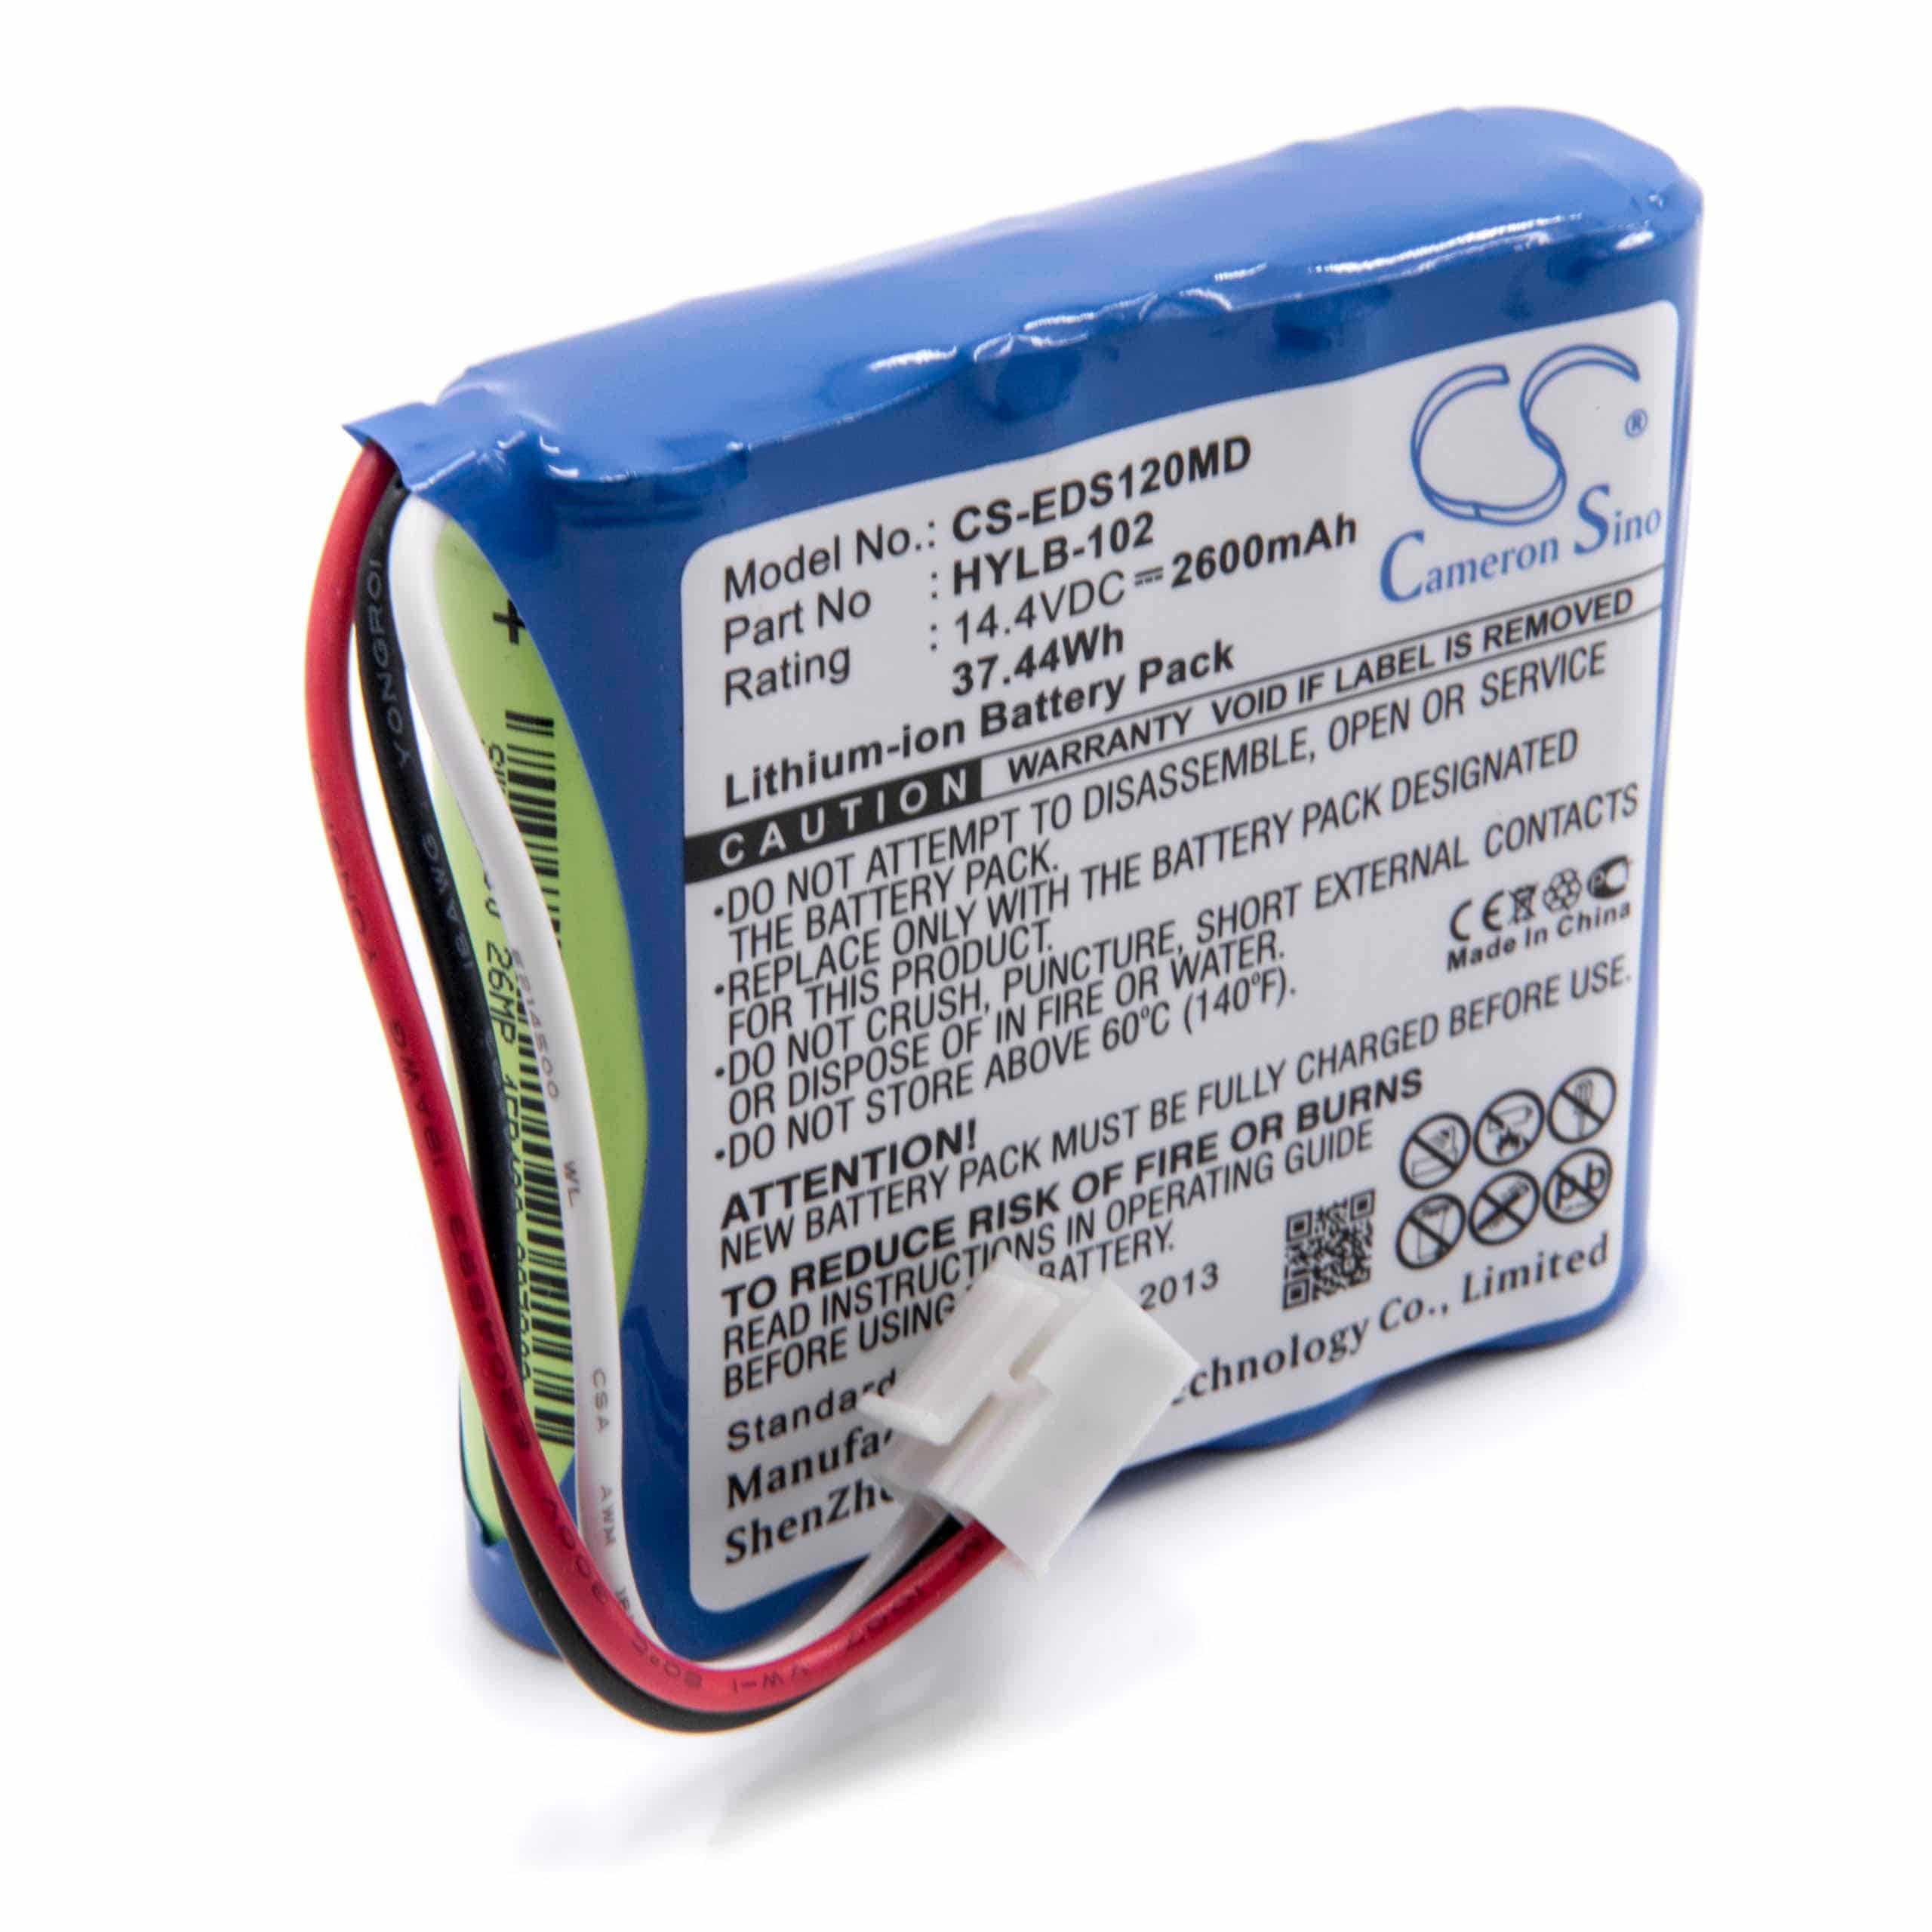 Batterie remplace Edan HYLB-102, TWSLB-005 pour appareil médical - 2600mAh 14,4V Li-ion